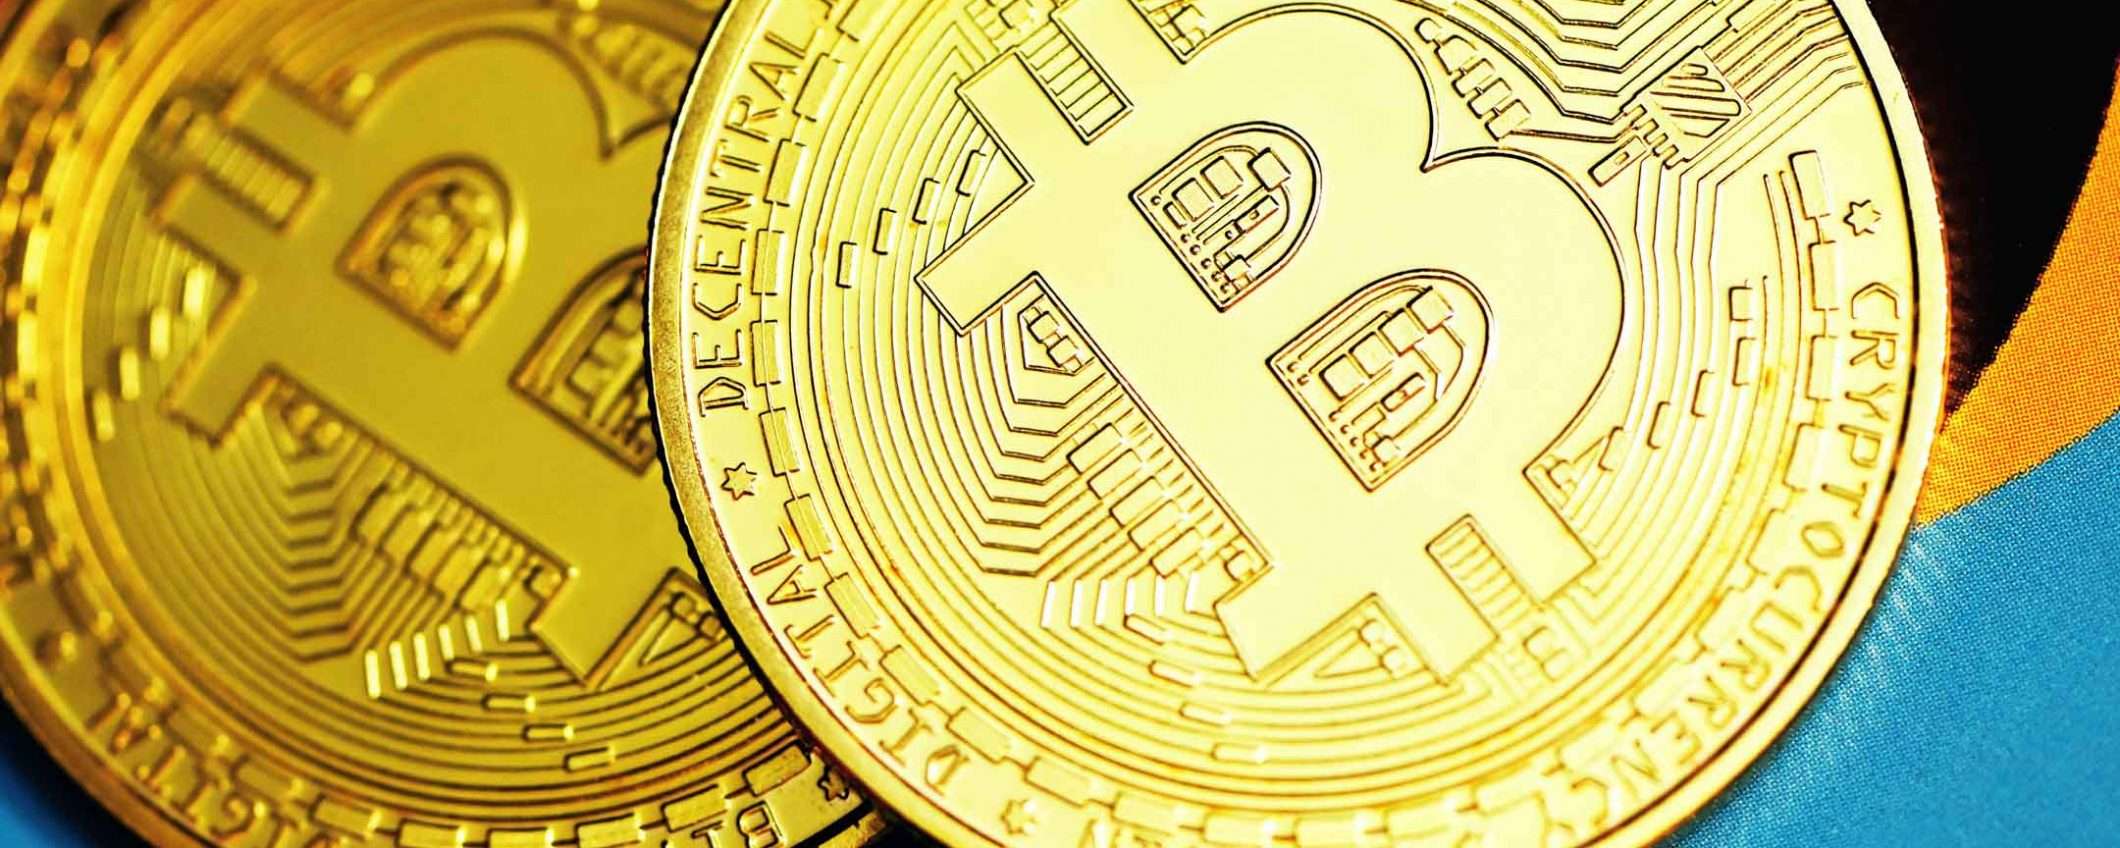 Bitcoin torna a crescere: +8% nelle ultime 24 ore